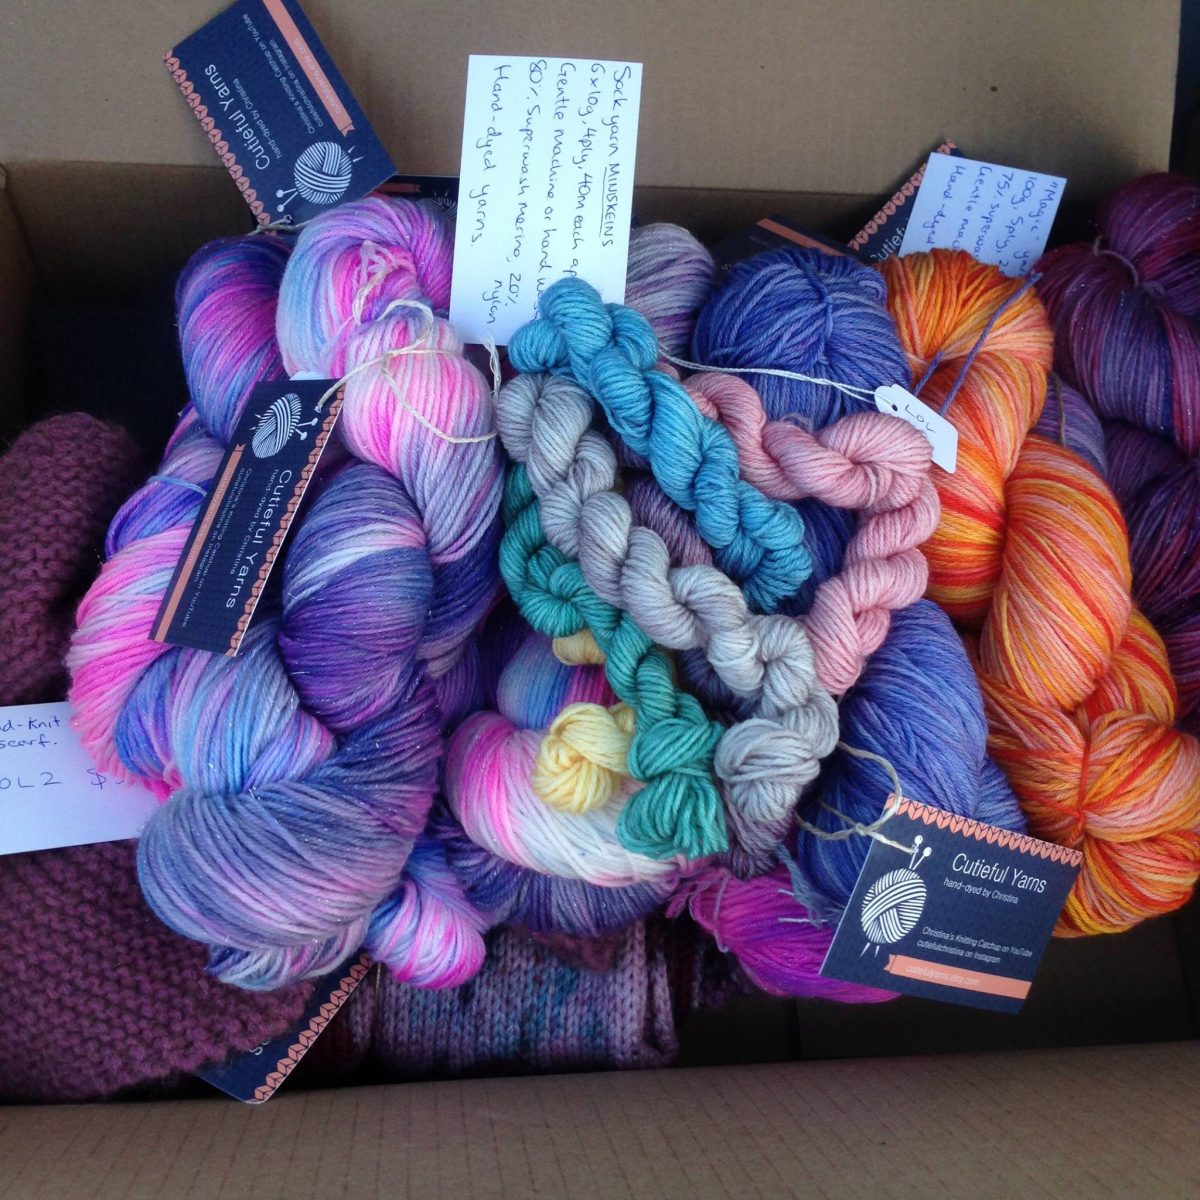 Selection of yarn